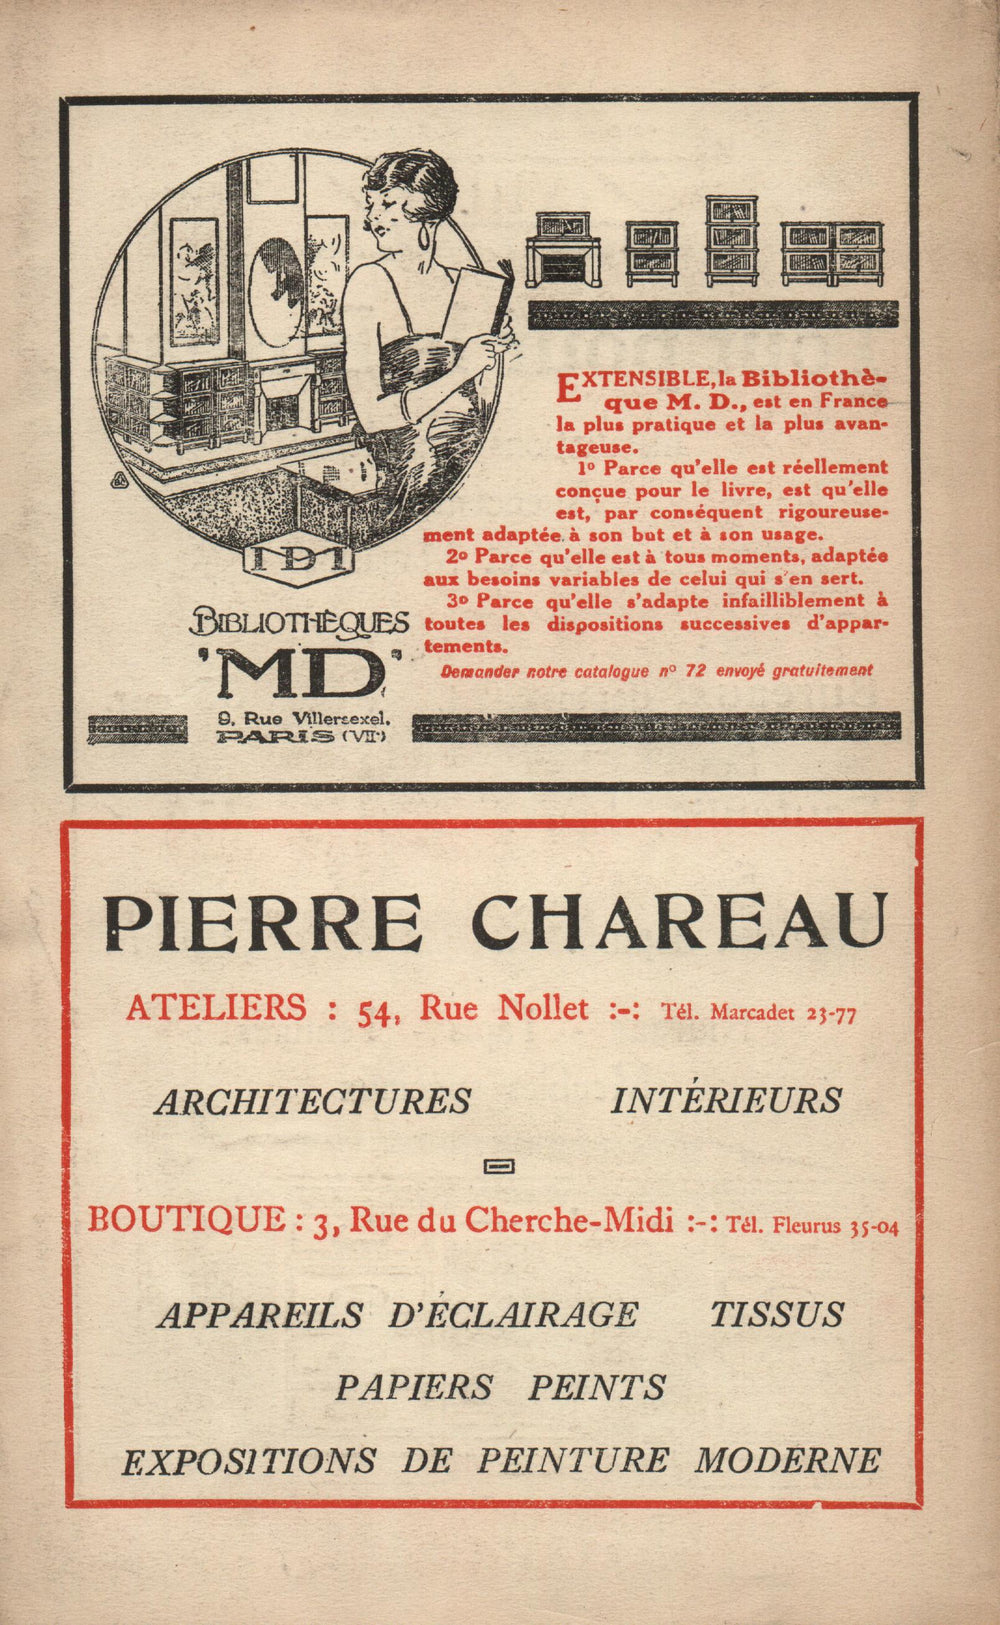 La Nouvelle Revue Française N' 153 (Juin 1926)